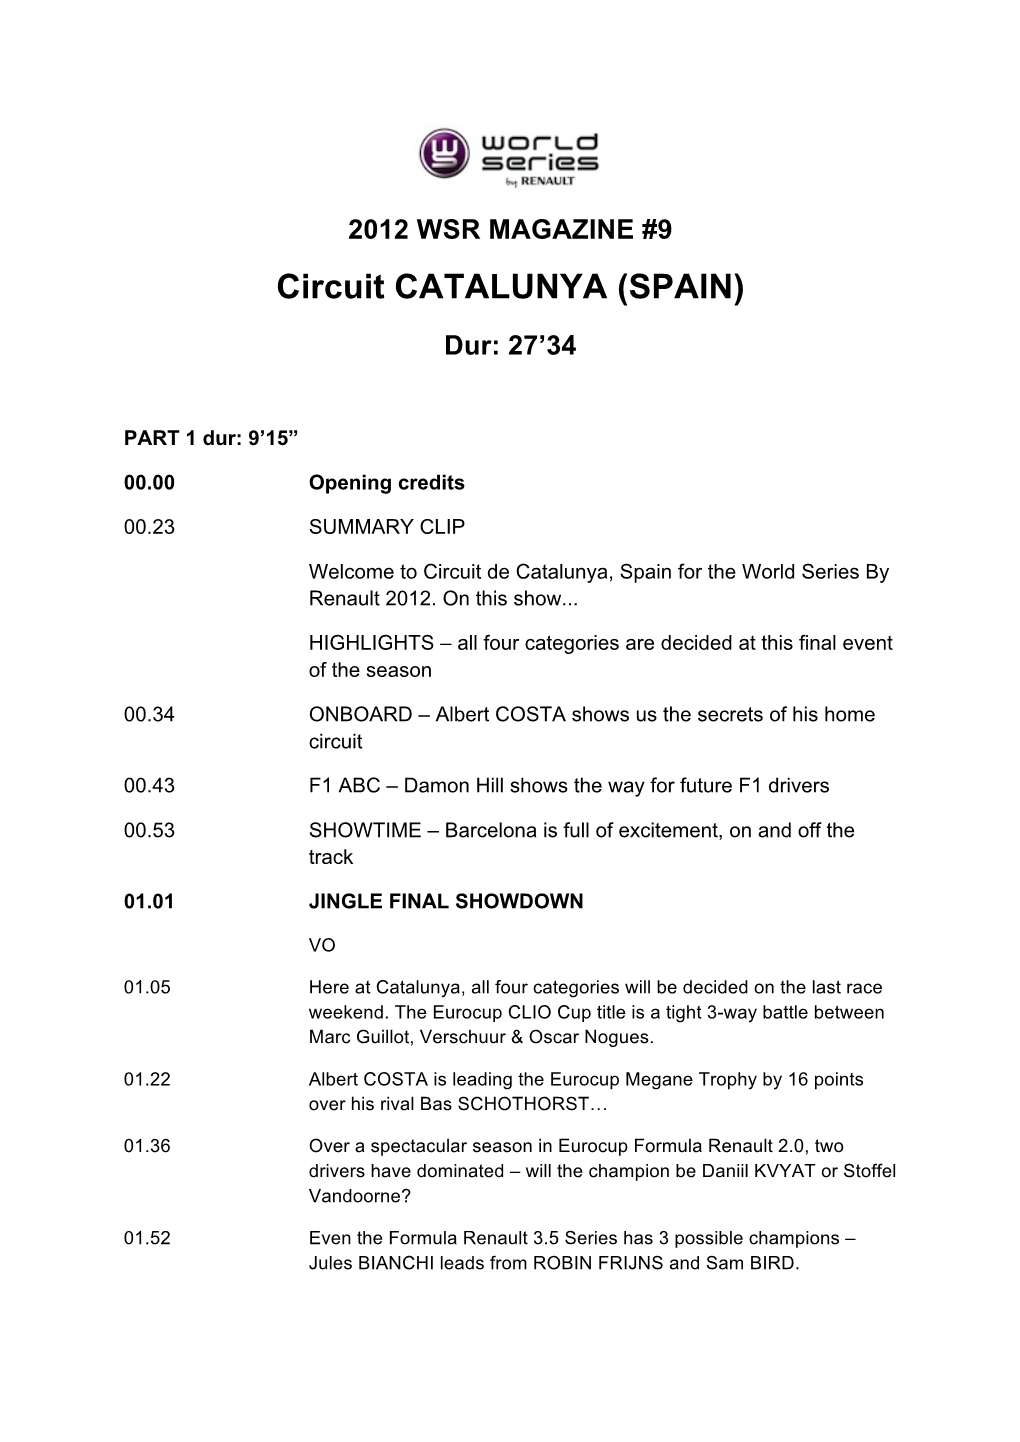 Circuit CATALUNYA (SPAIN)